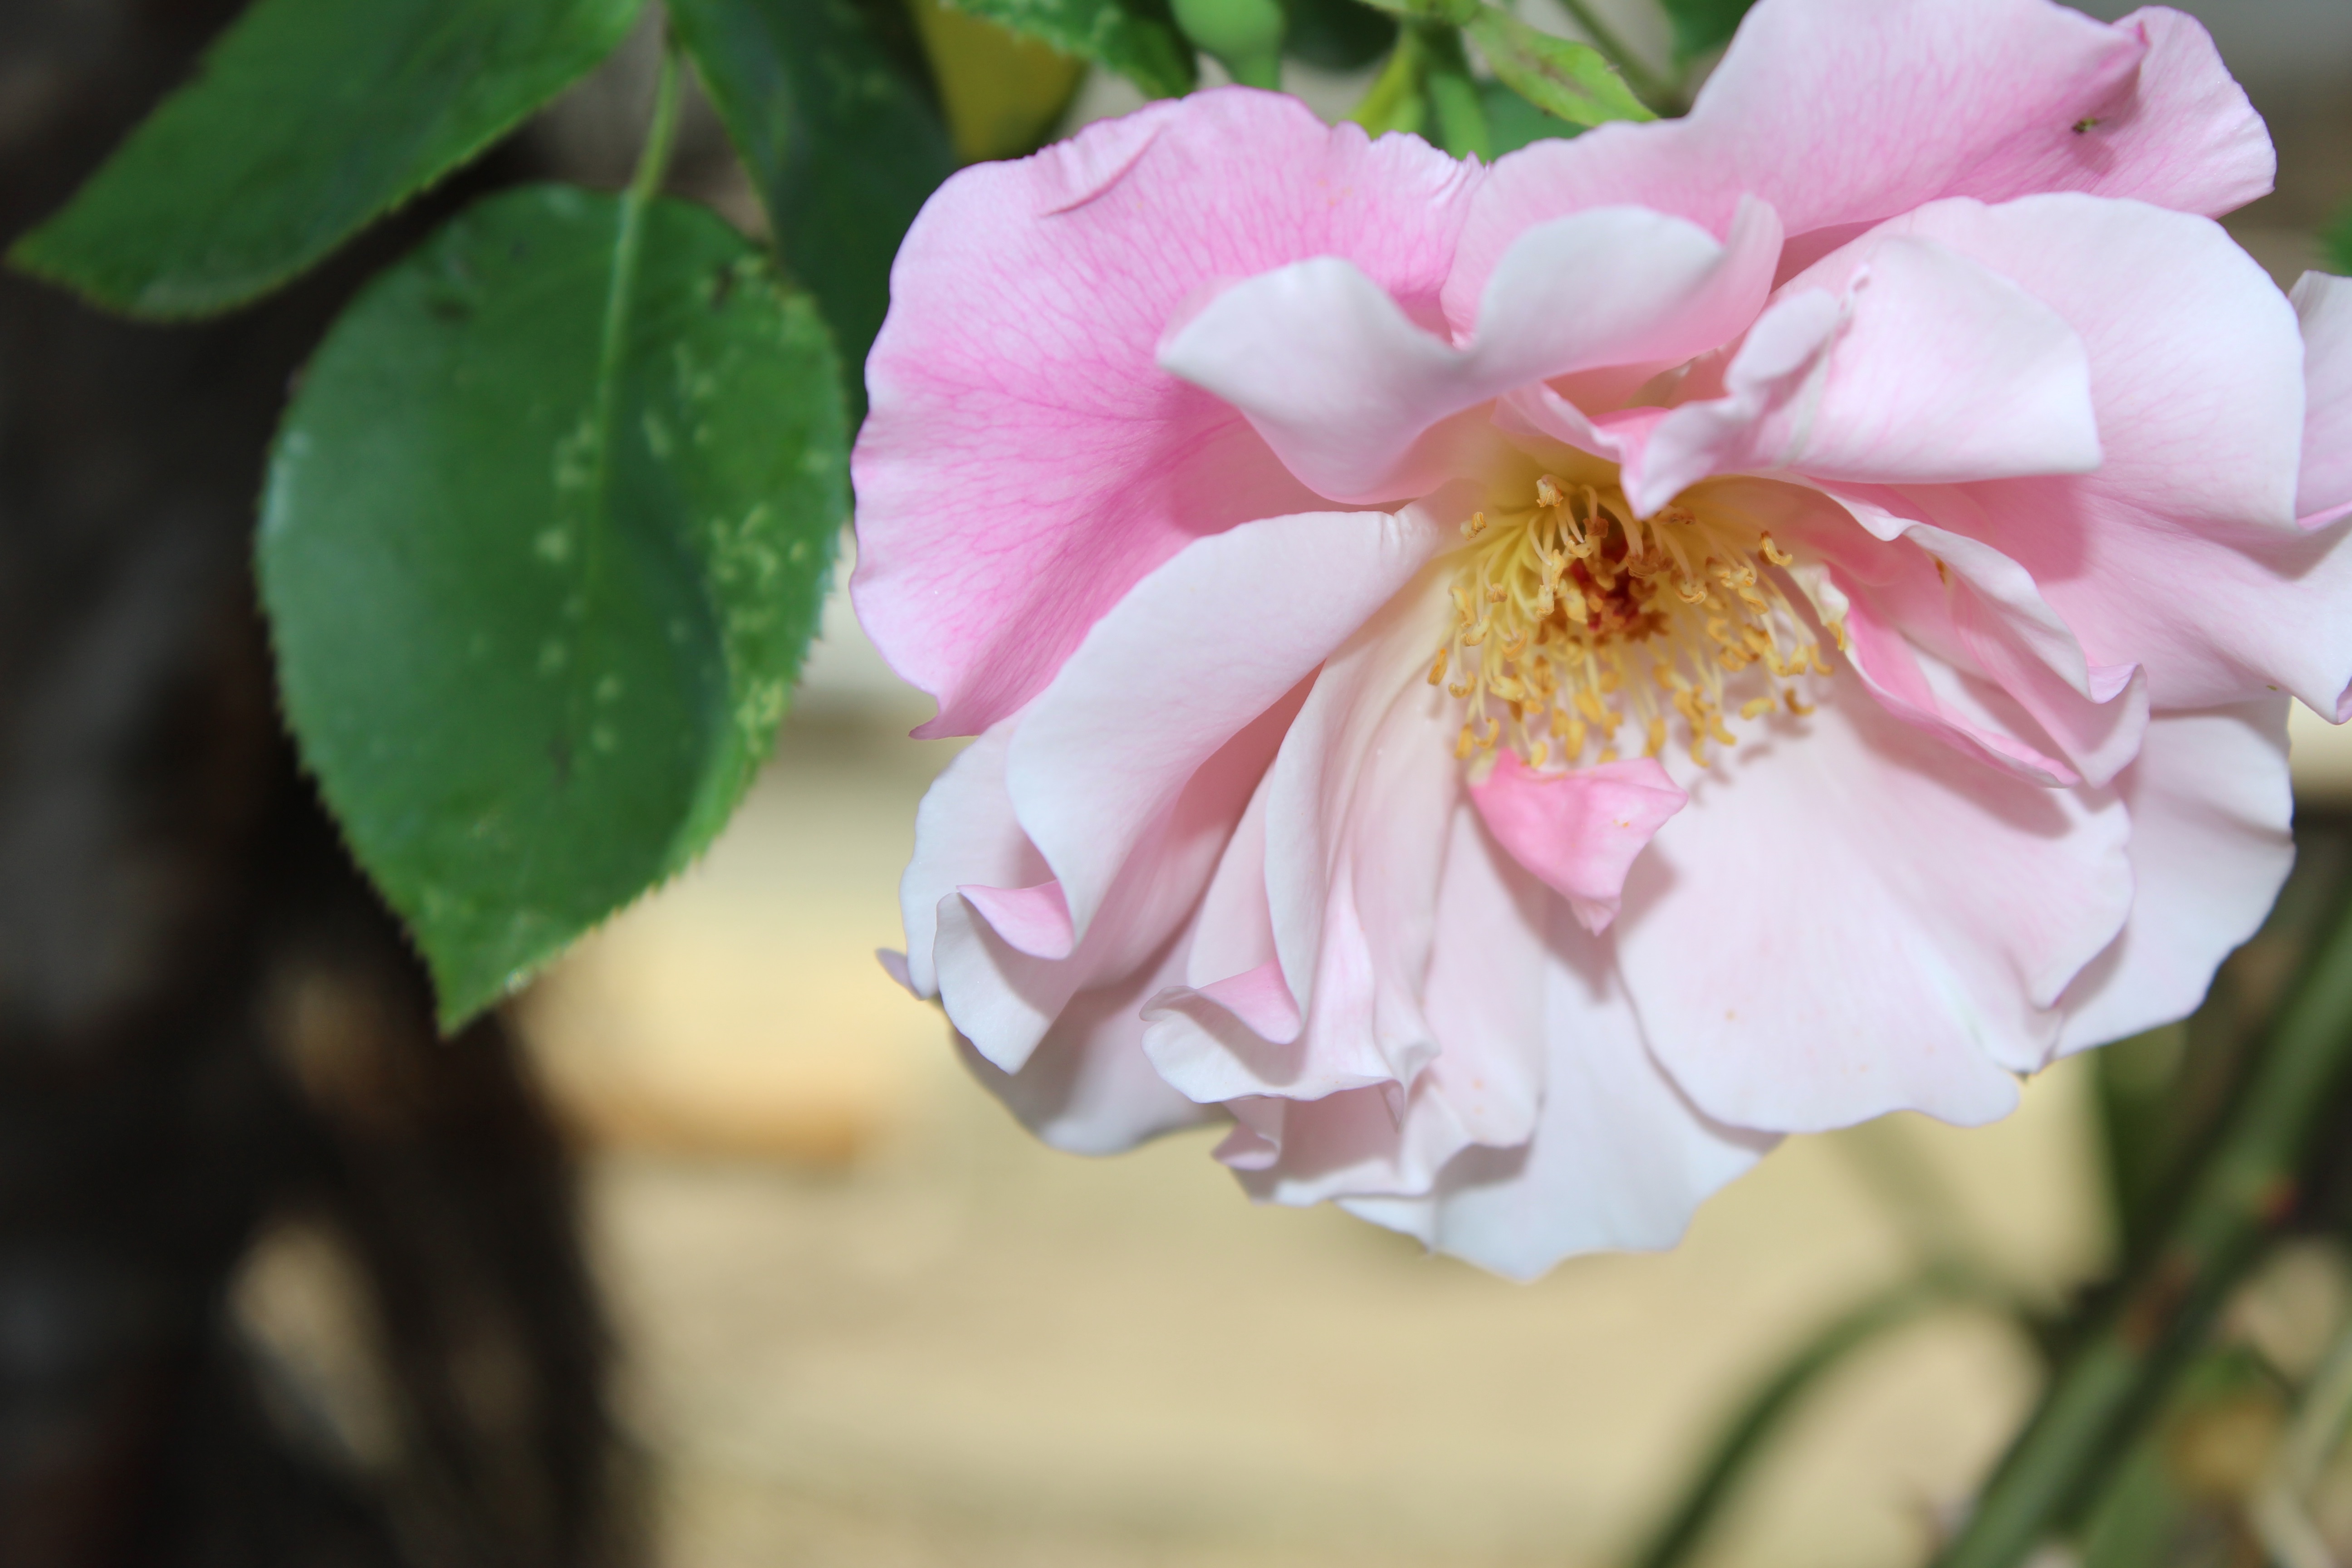 スパニッシュ・ビューティーが、今年の最初の薔薇の開花になりました。